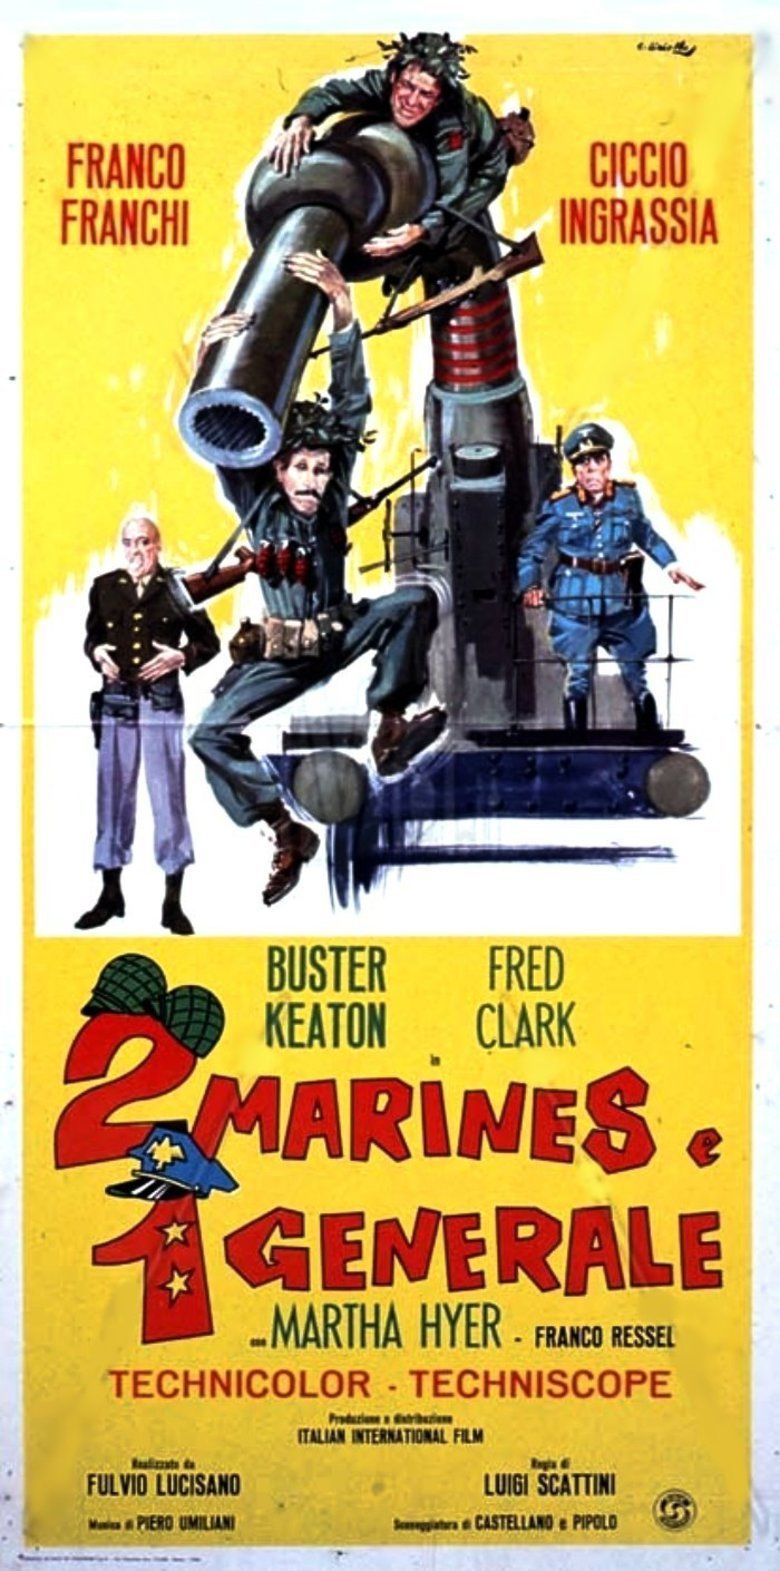 War Italian Style movie poster